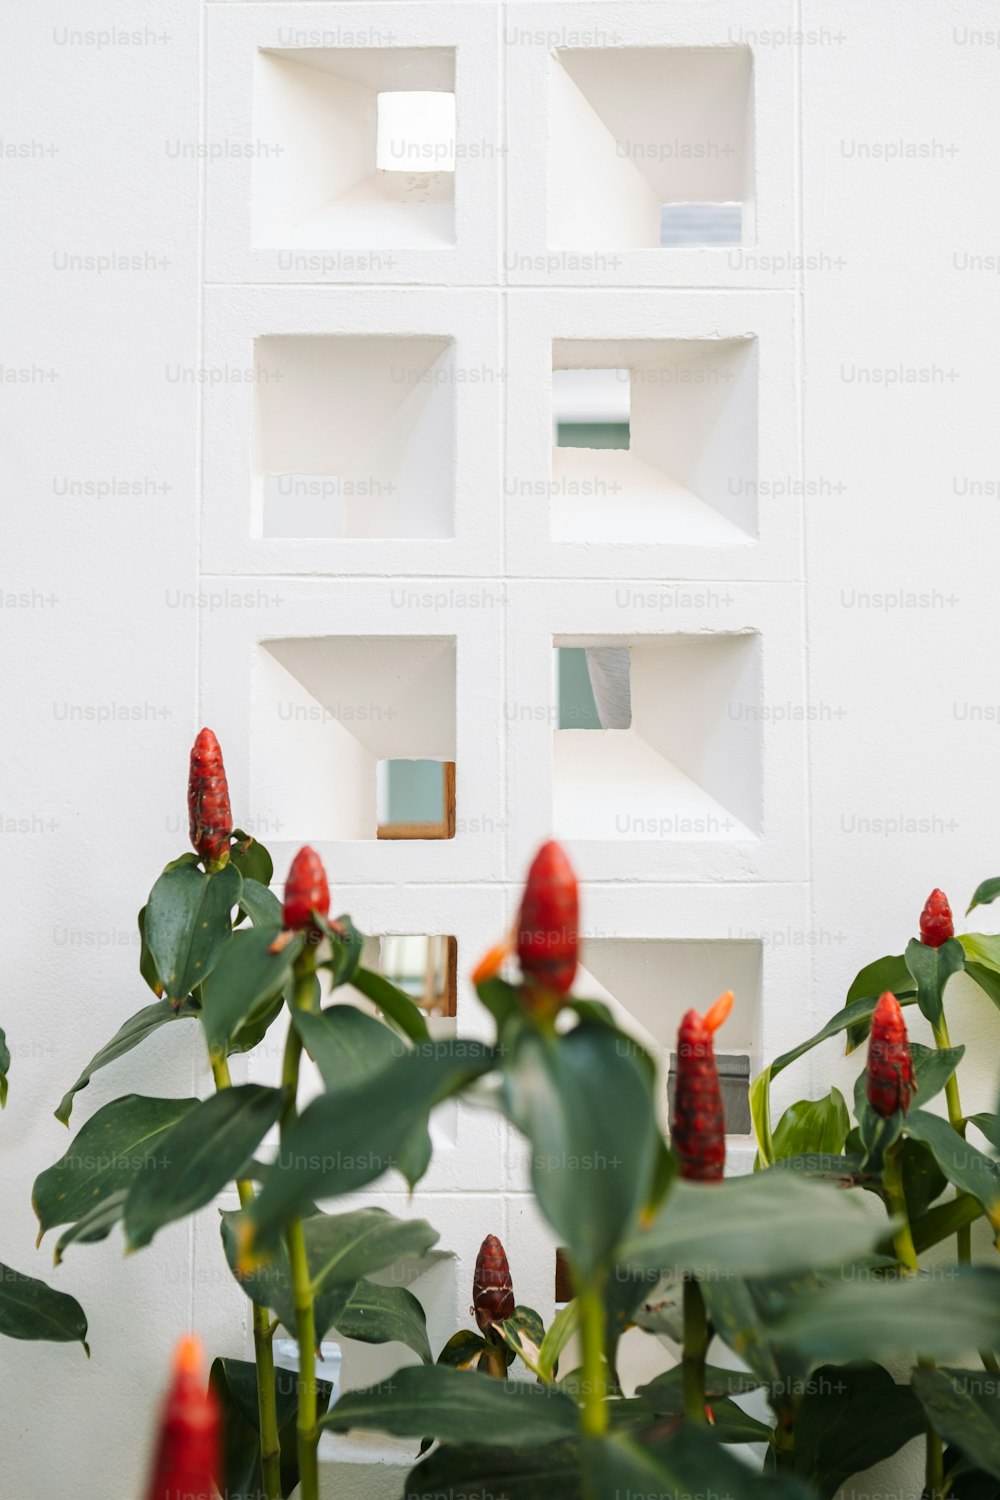 Una planta con flores rojas frente a una pared blanca